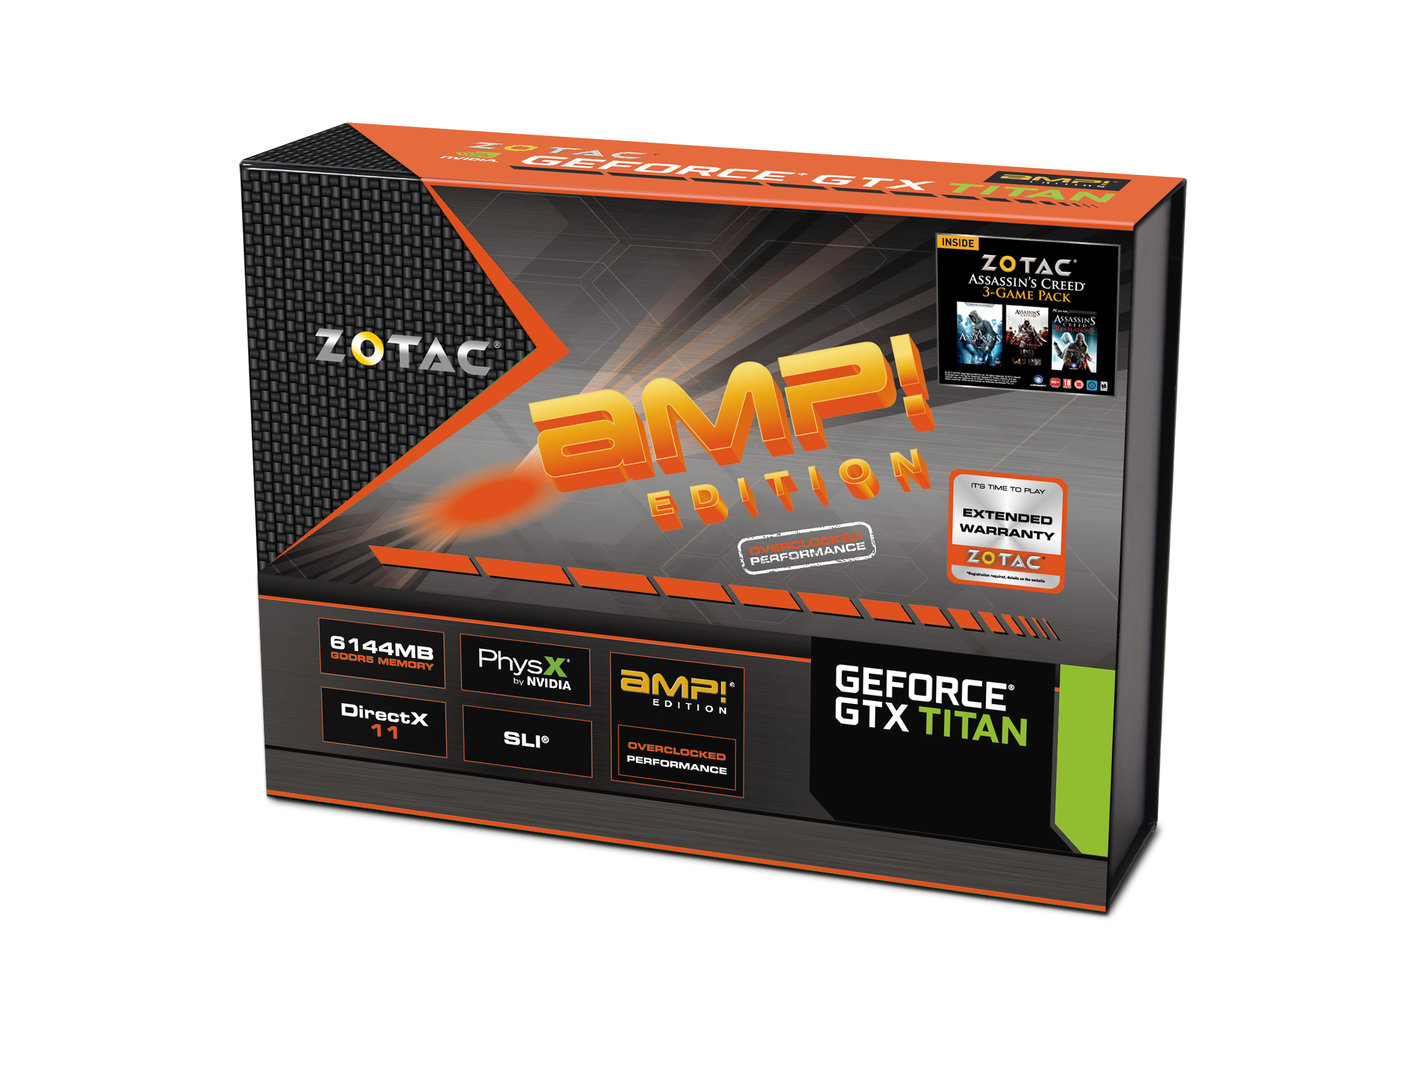 Zotac GeForce GTX Titan AMP! Edition